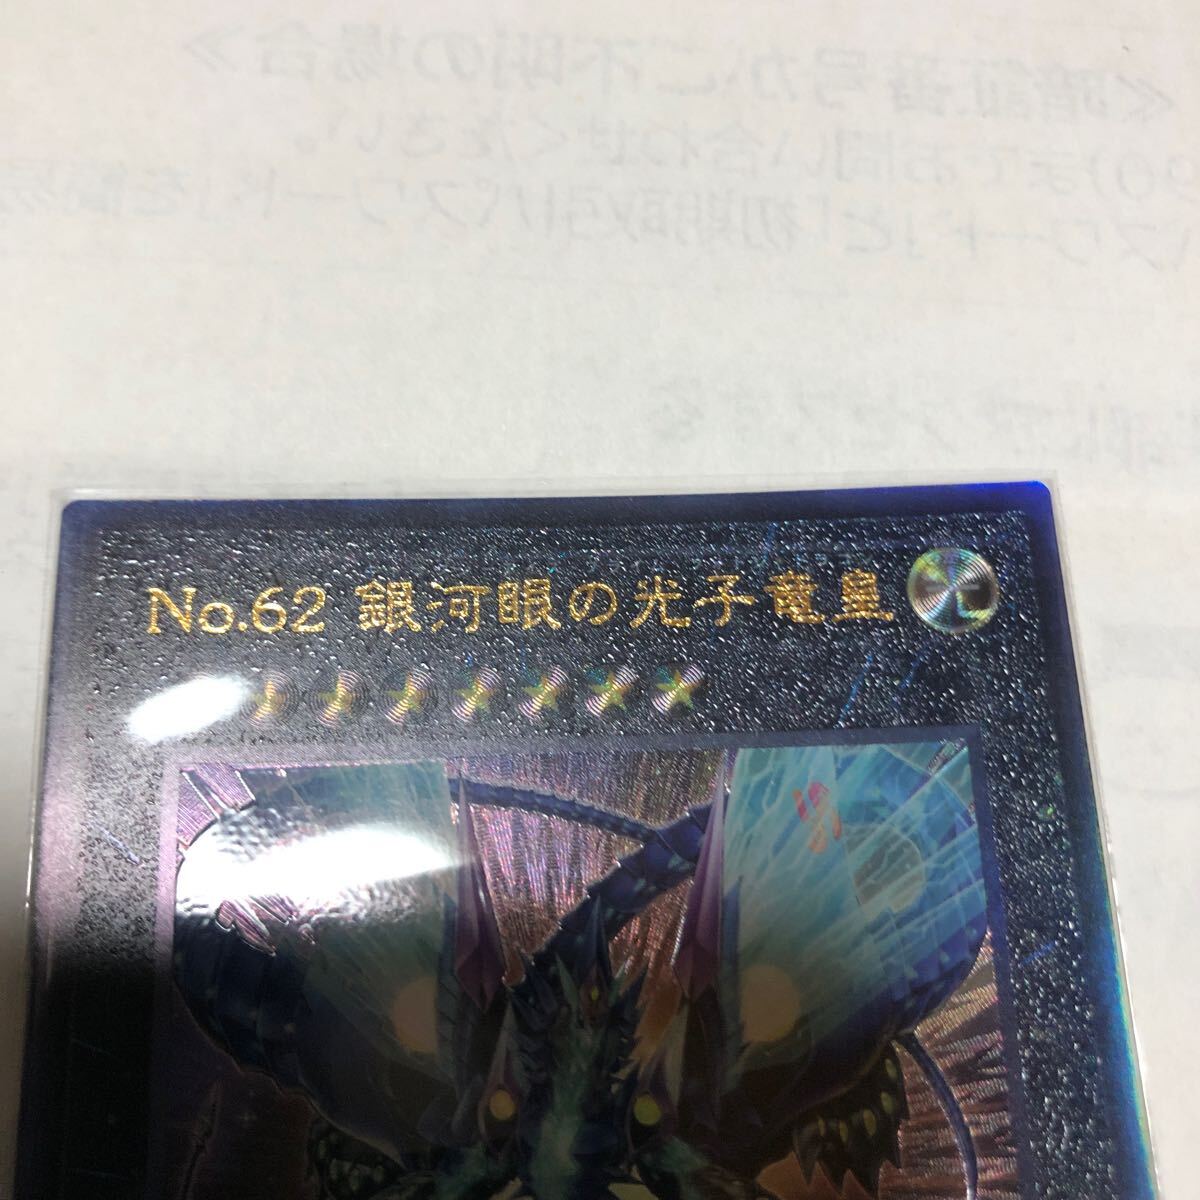 遊戯王カード 020 レリーフ No.62 銀眼の光子竜皇 1枚 素人保管のため、中古商品としてご理解頂いてご入札ください。の画像2